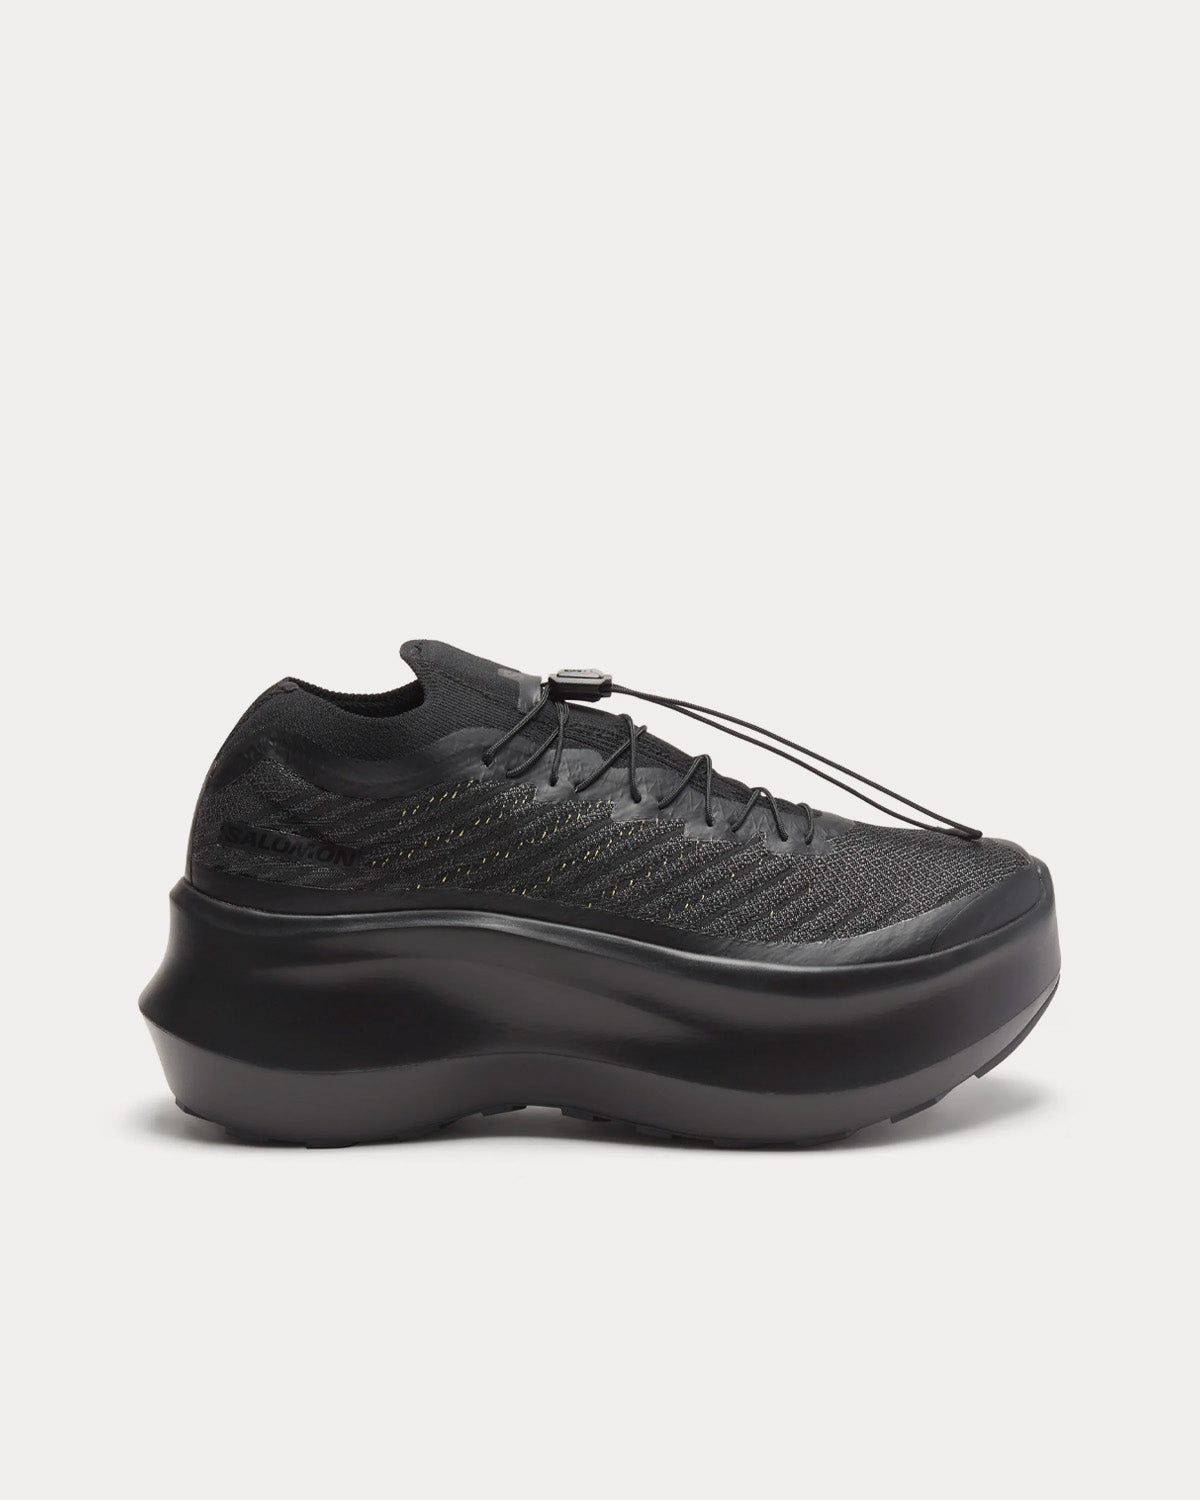 Salomon x Comme des Garçons - Pulsar Platform Black Low Top Sneakers